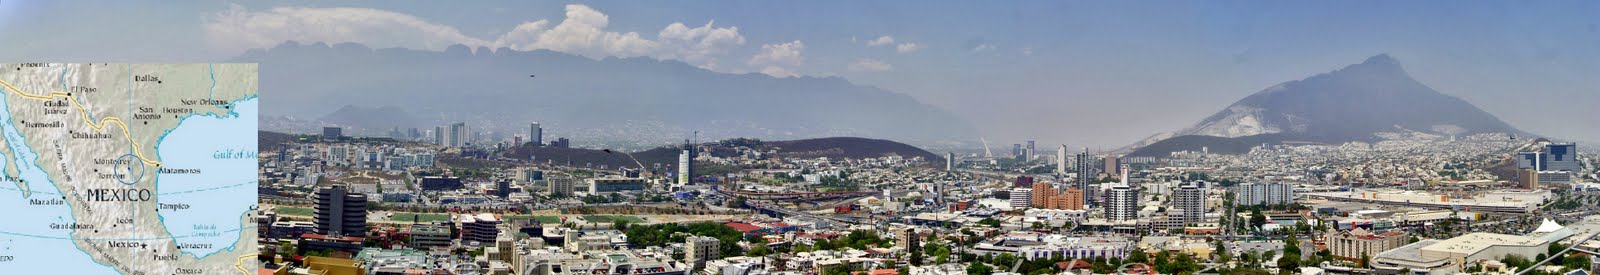 Monterrey, mas que una ciudad